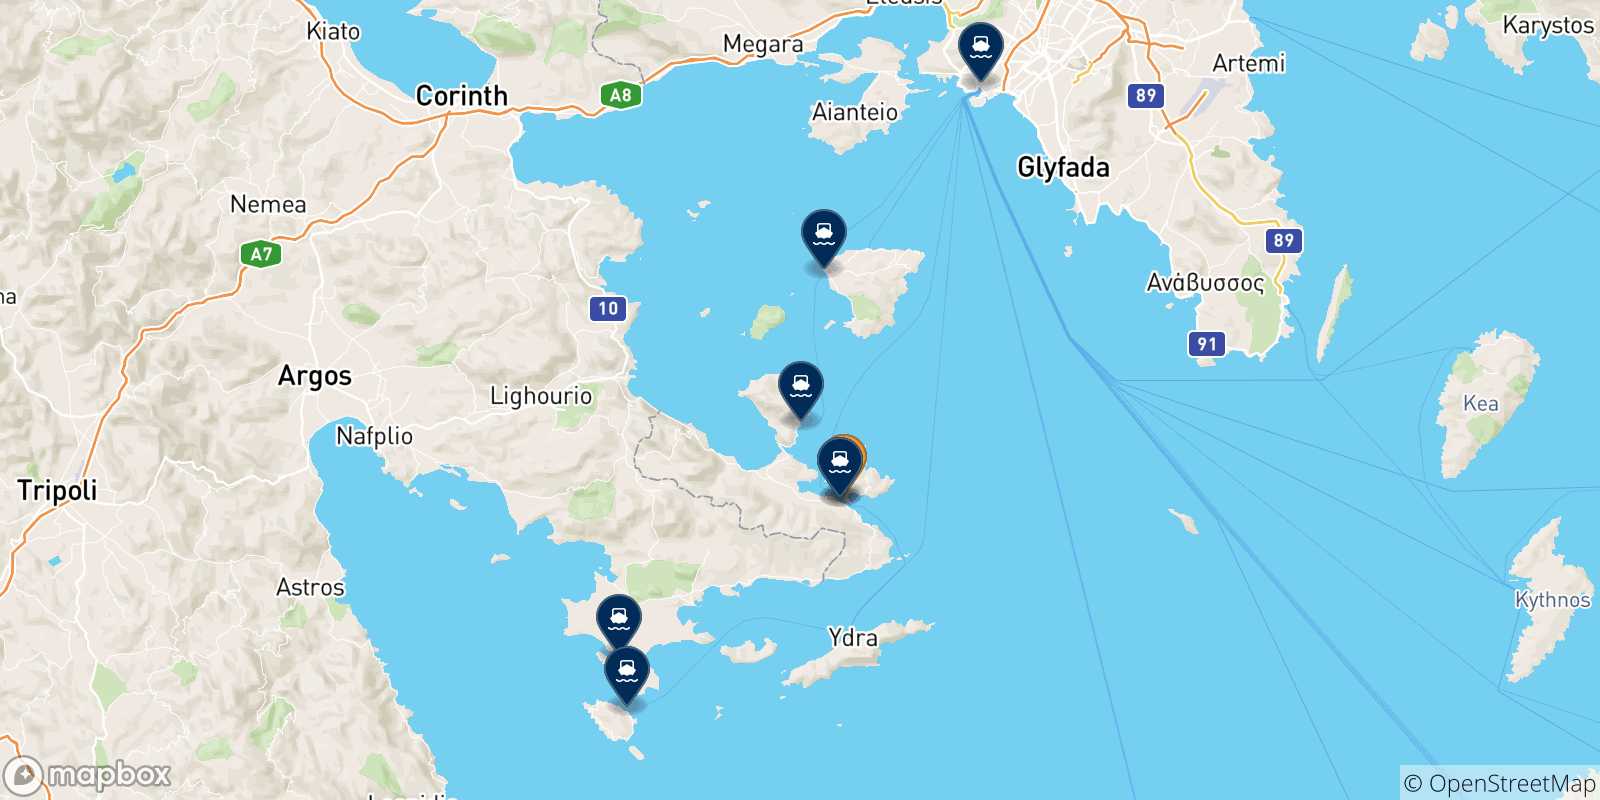 Mappa delle possibili rotte tra Poros e la Grecia